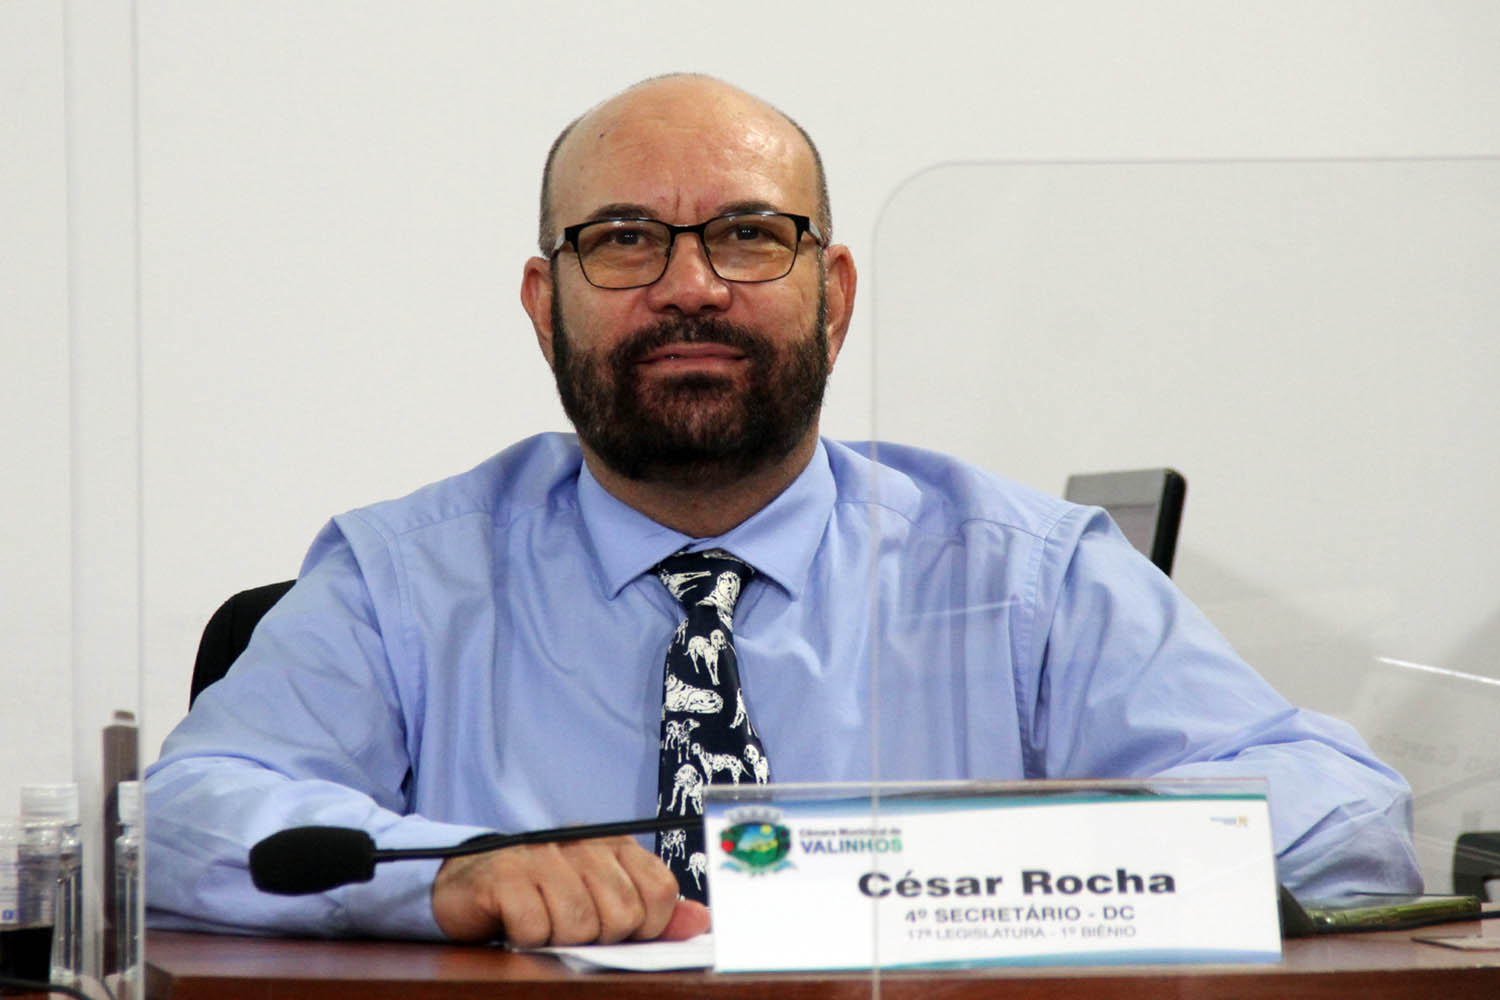 #PraCegoVer: Foto mostra o vereador César Rocha sentado em seu lugar no plenário, durante a sessão ordinária.